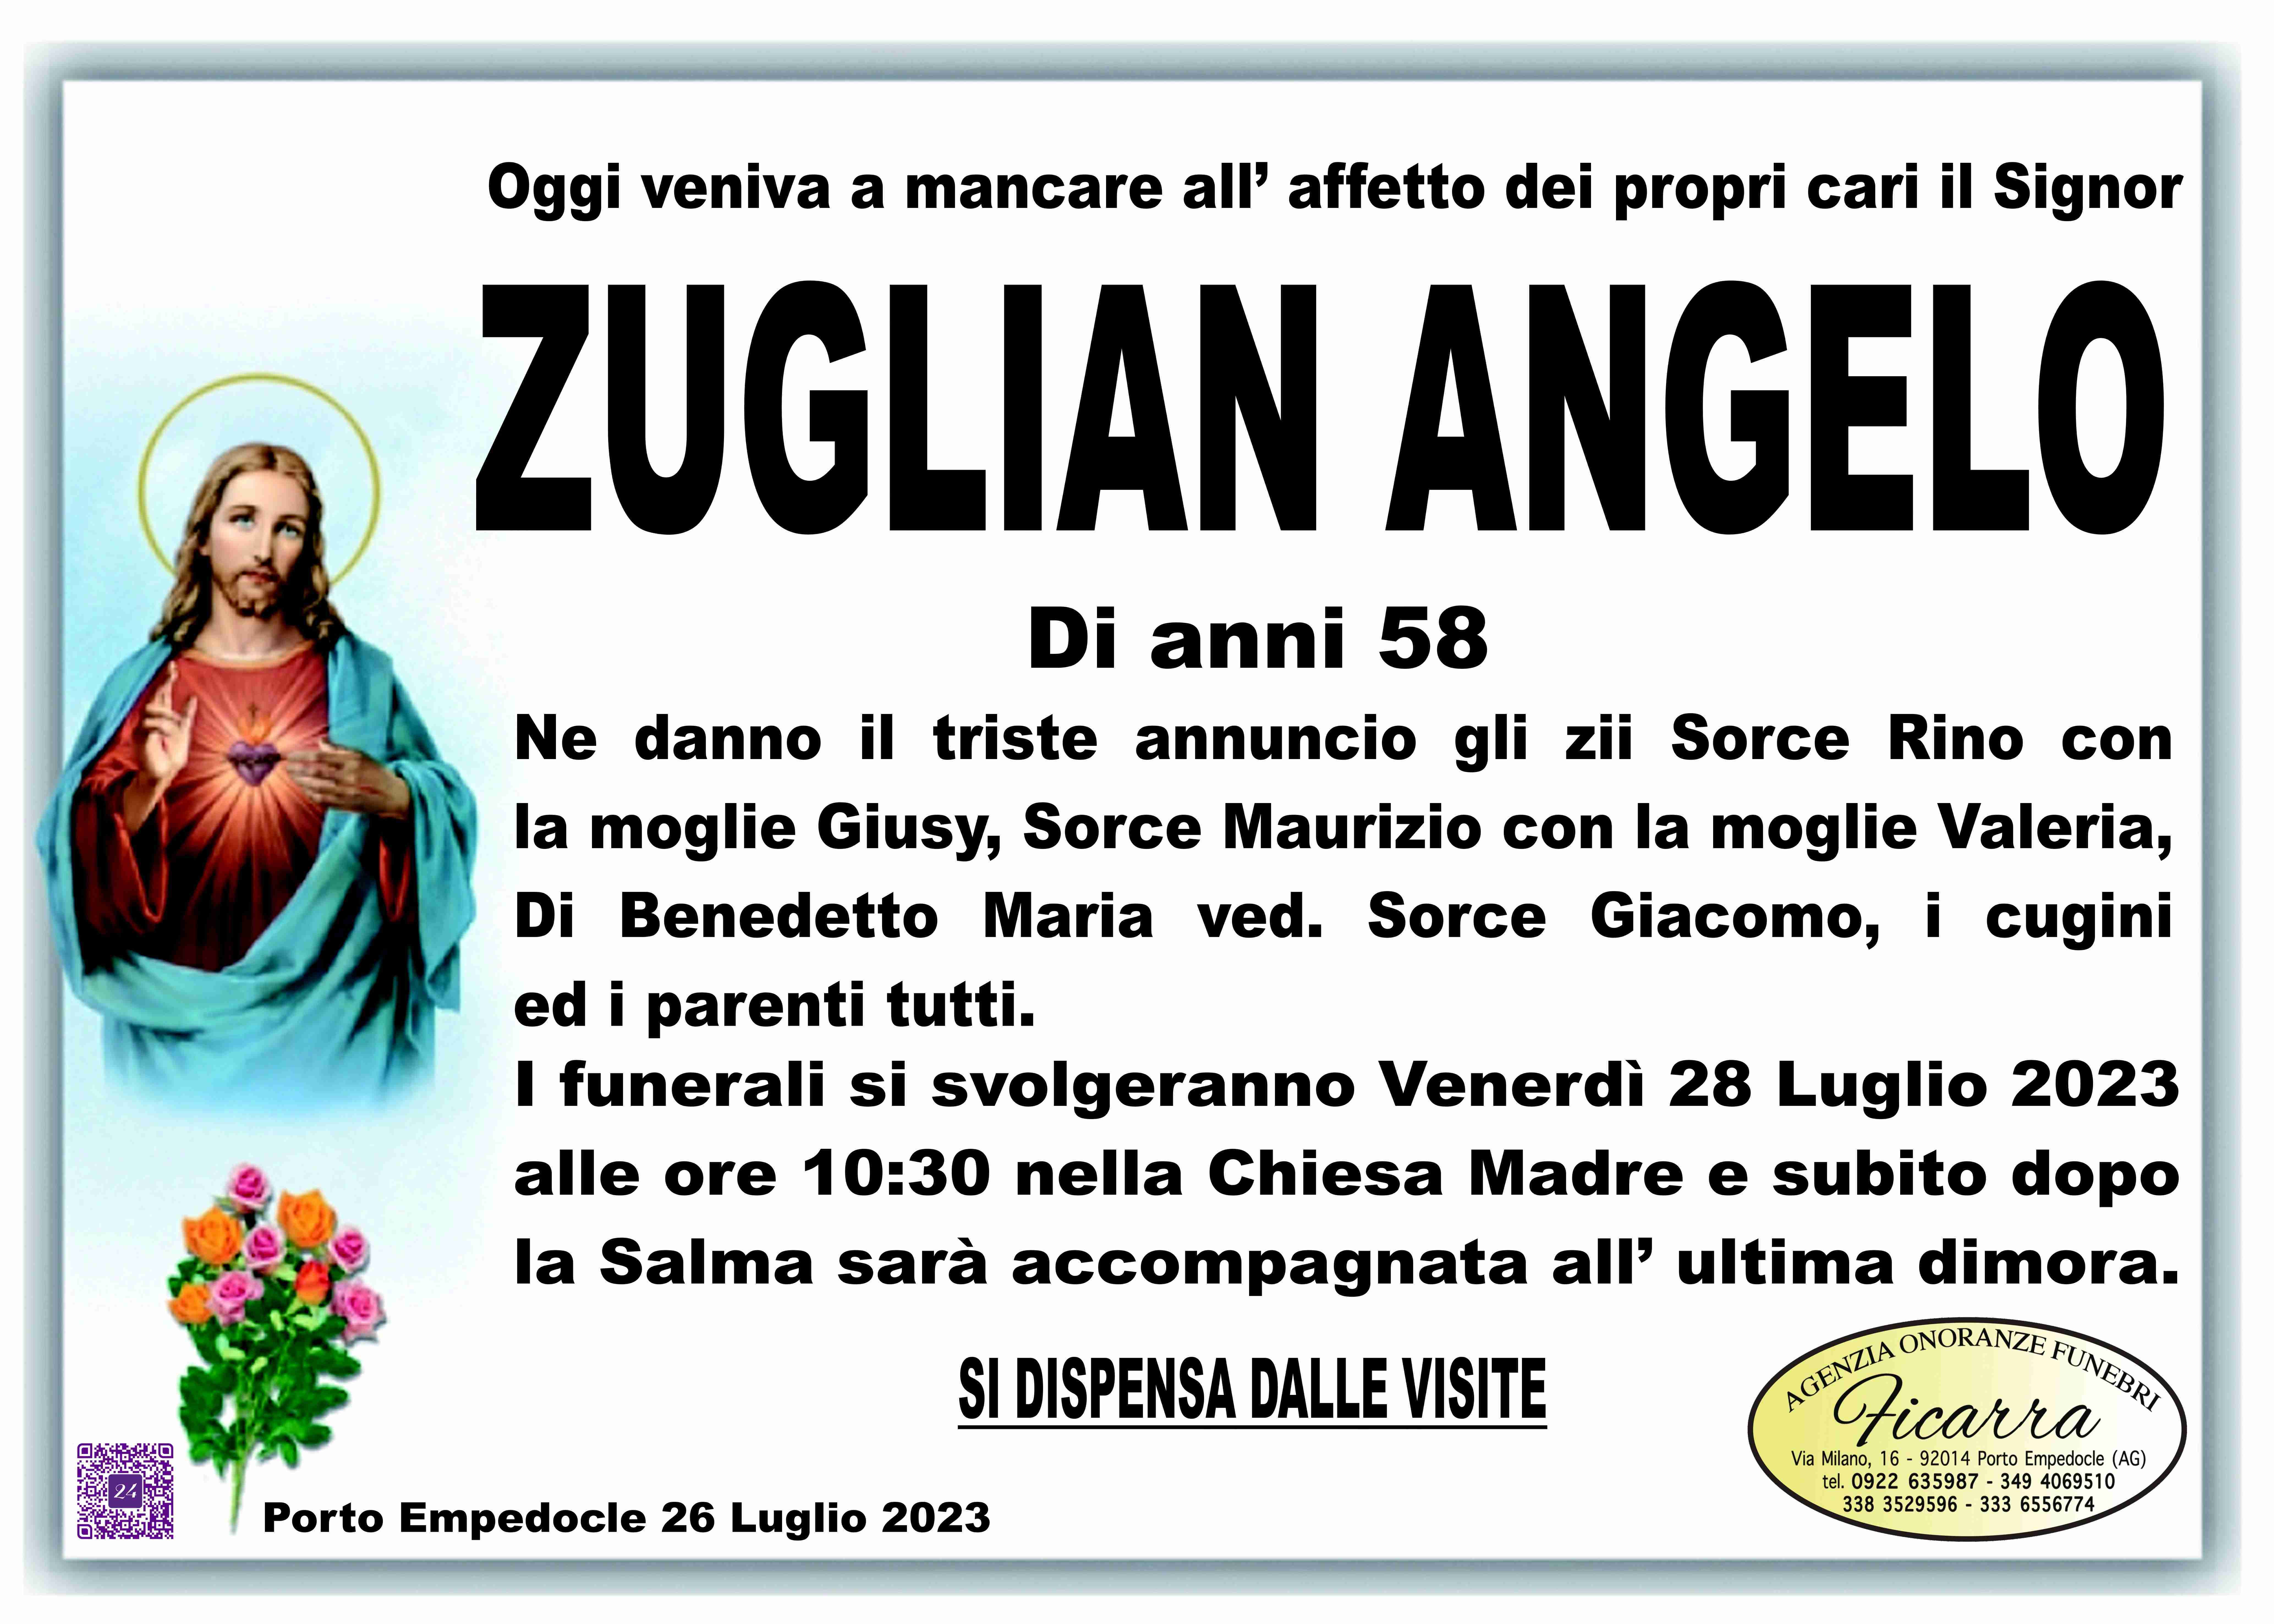 Angelo Zuglian